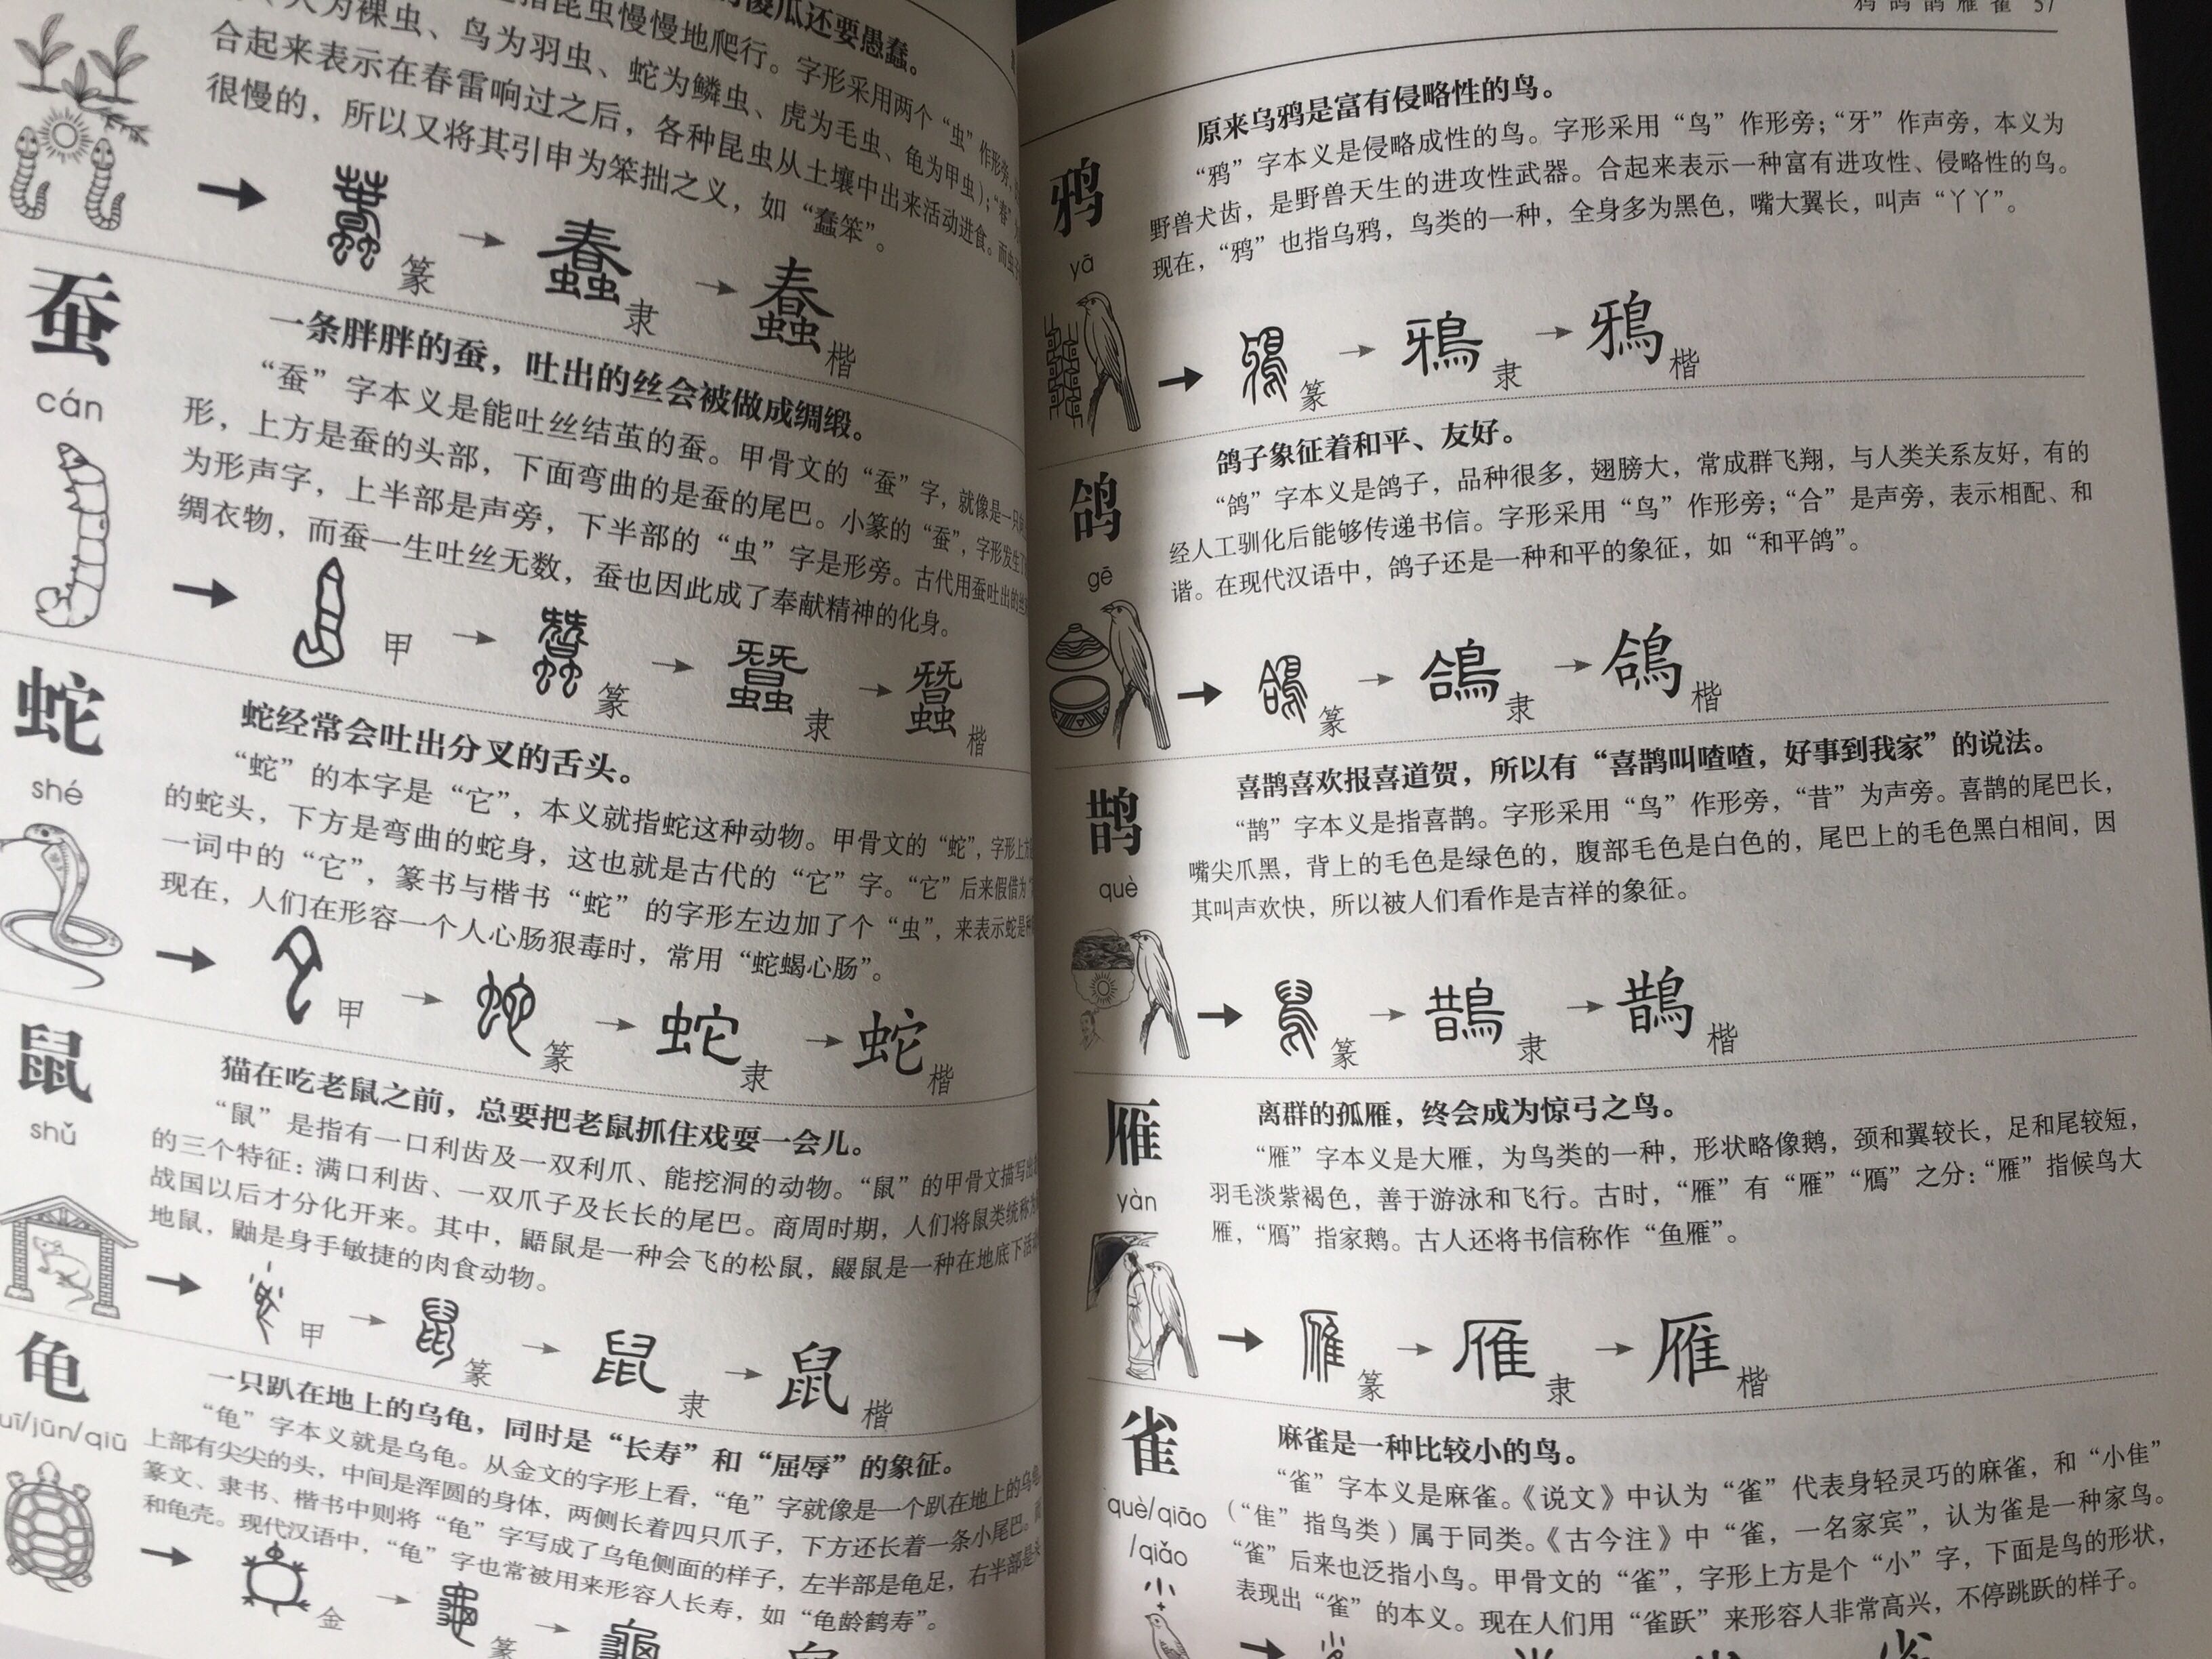 用简单易懂的方式解读汉字，方便小学生自己阅读，促进趣味学习。